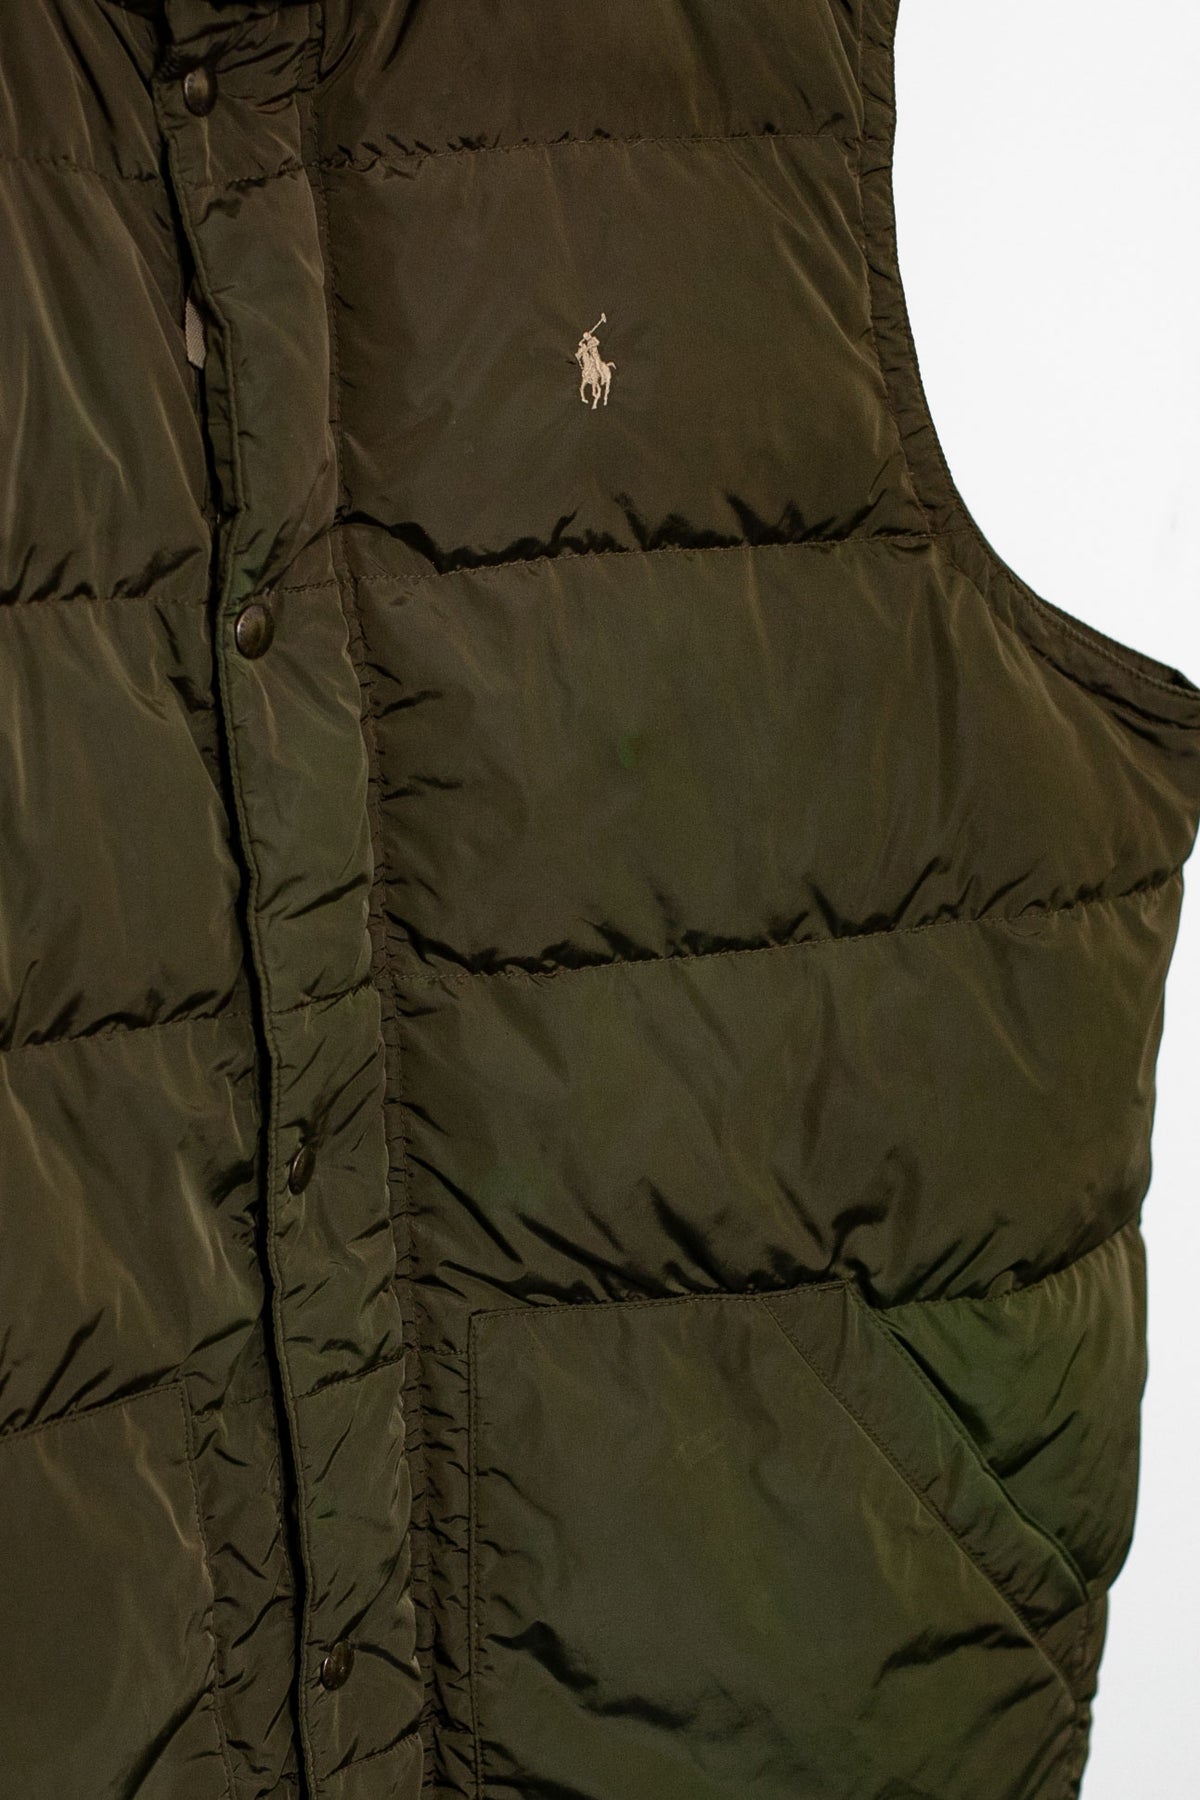 00s Ralph Lauren Gilet Puffer Jacket (XXL)